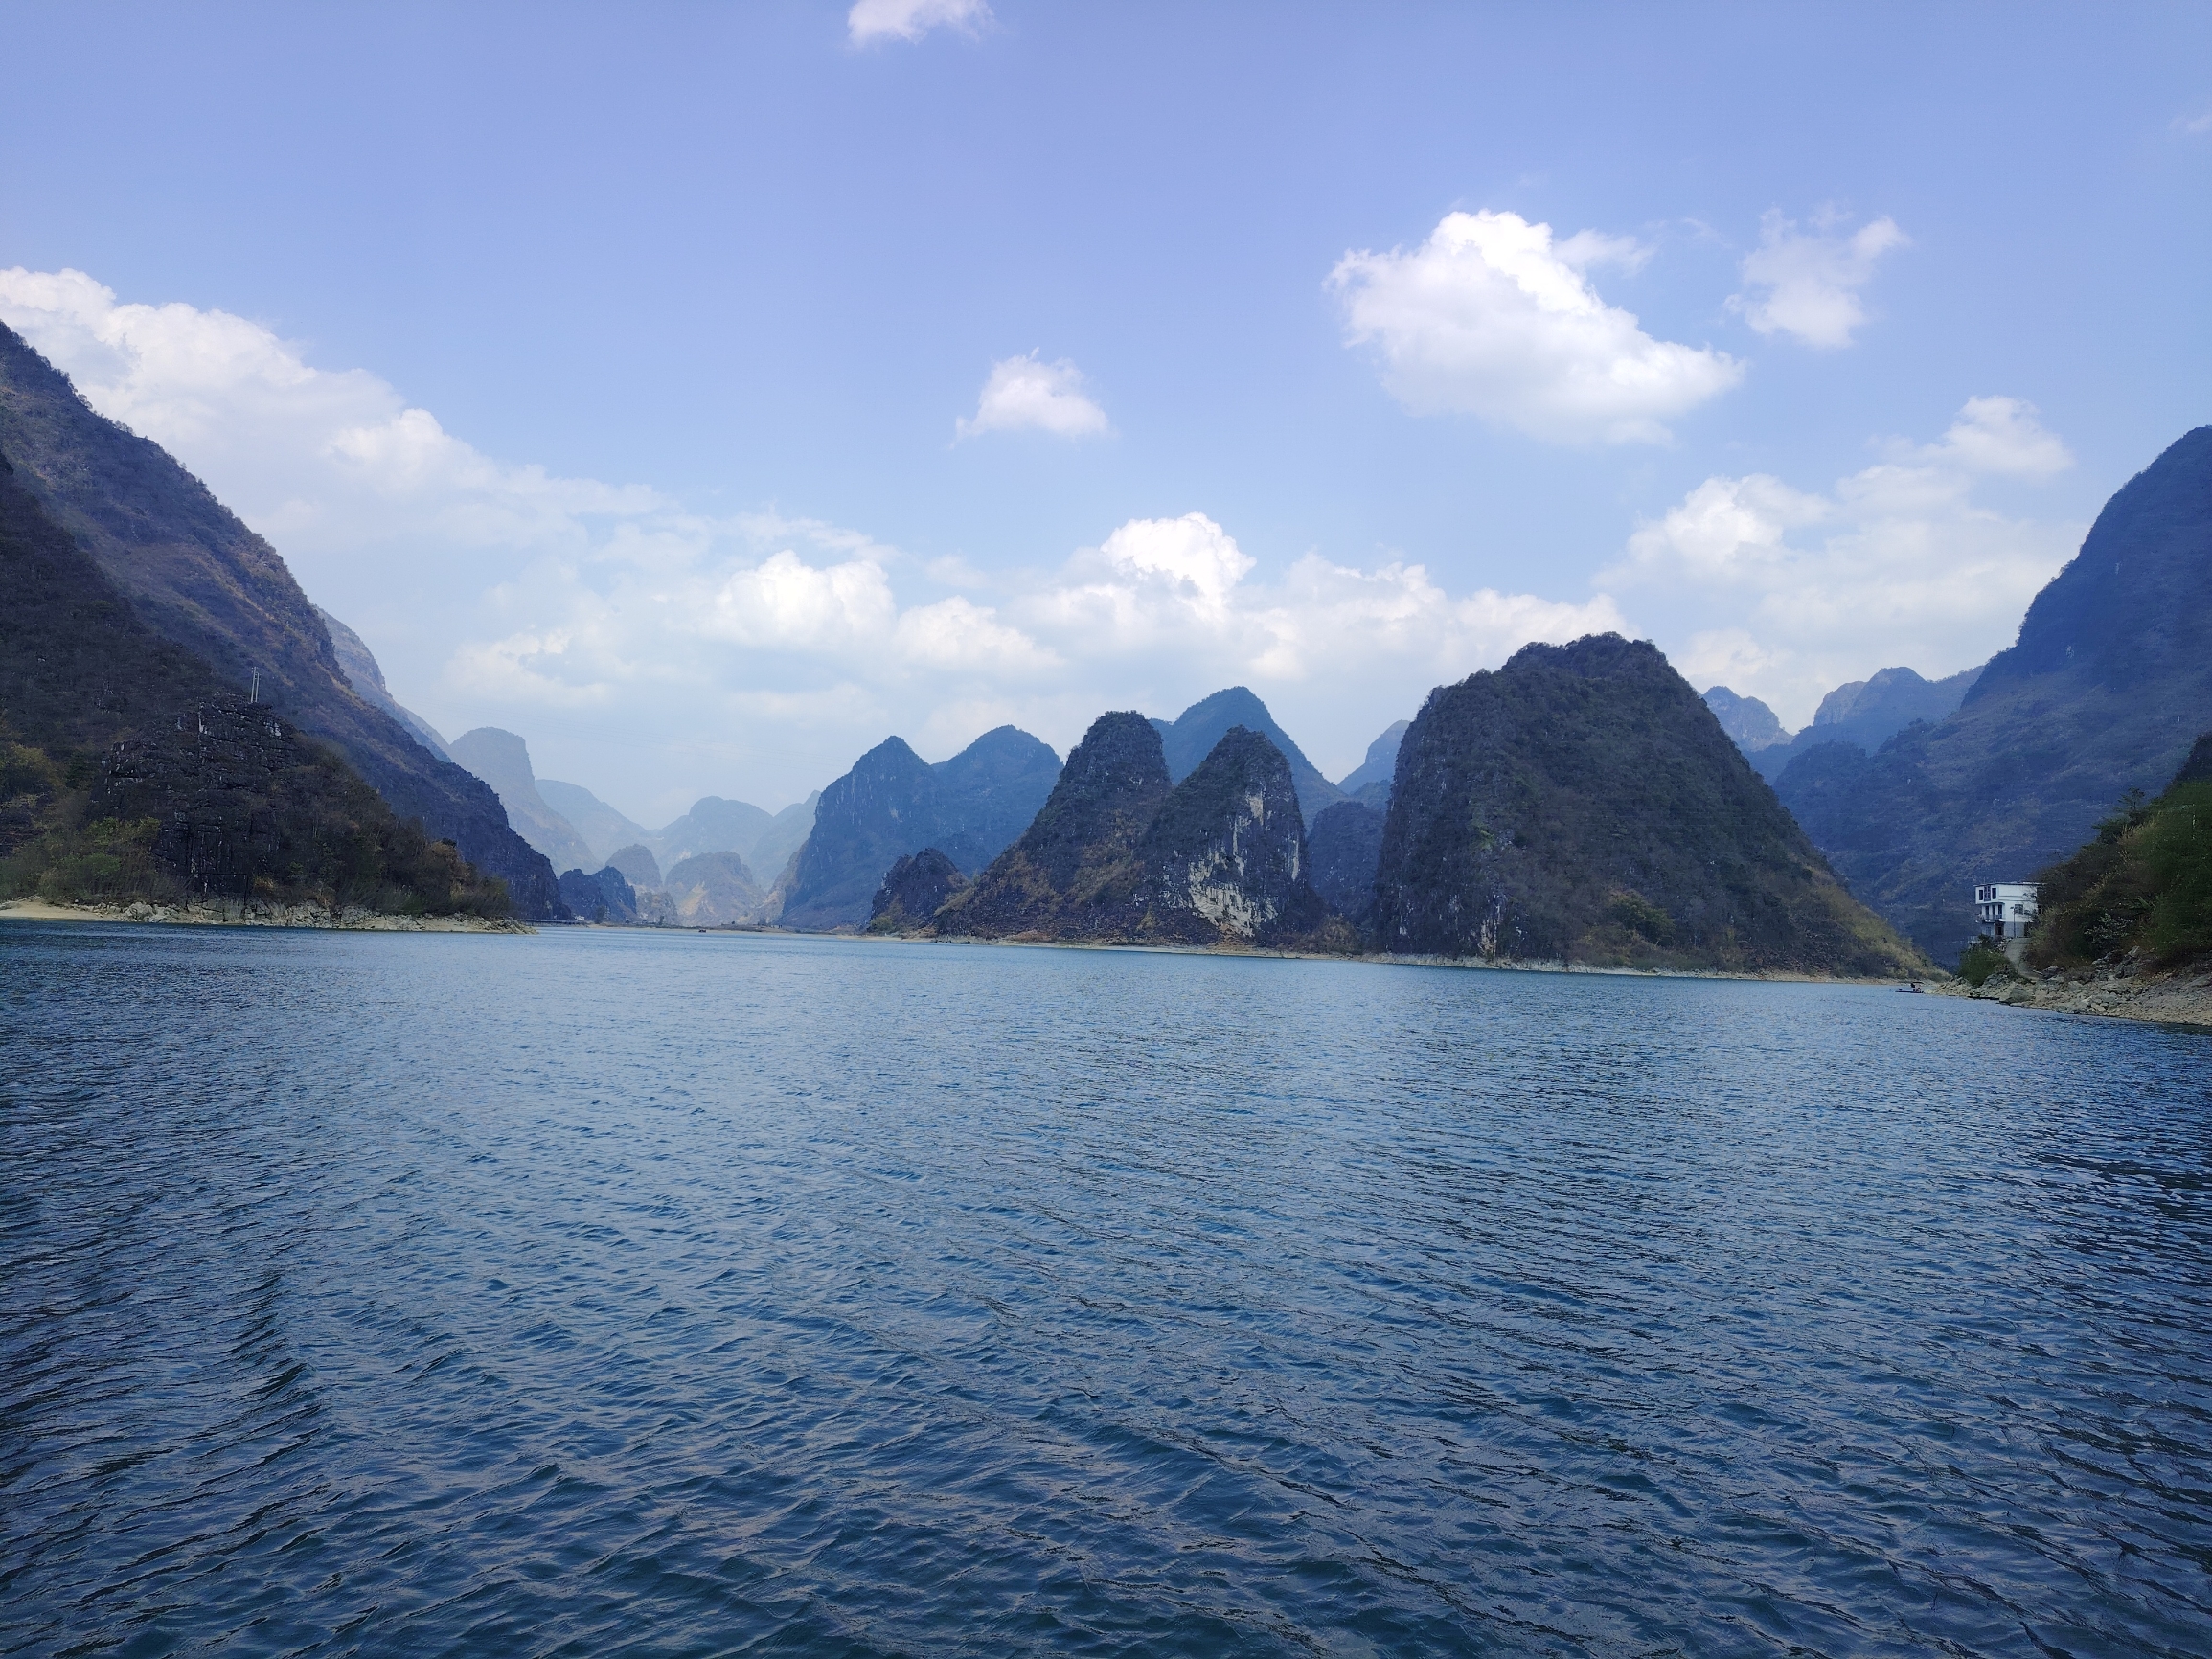 广西浩坤湖值得一去 拍照很出效果